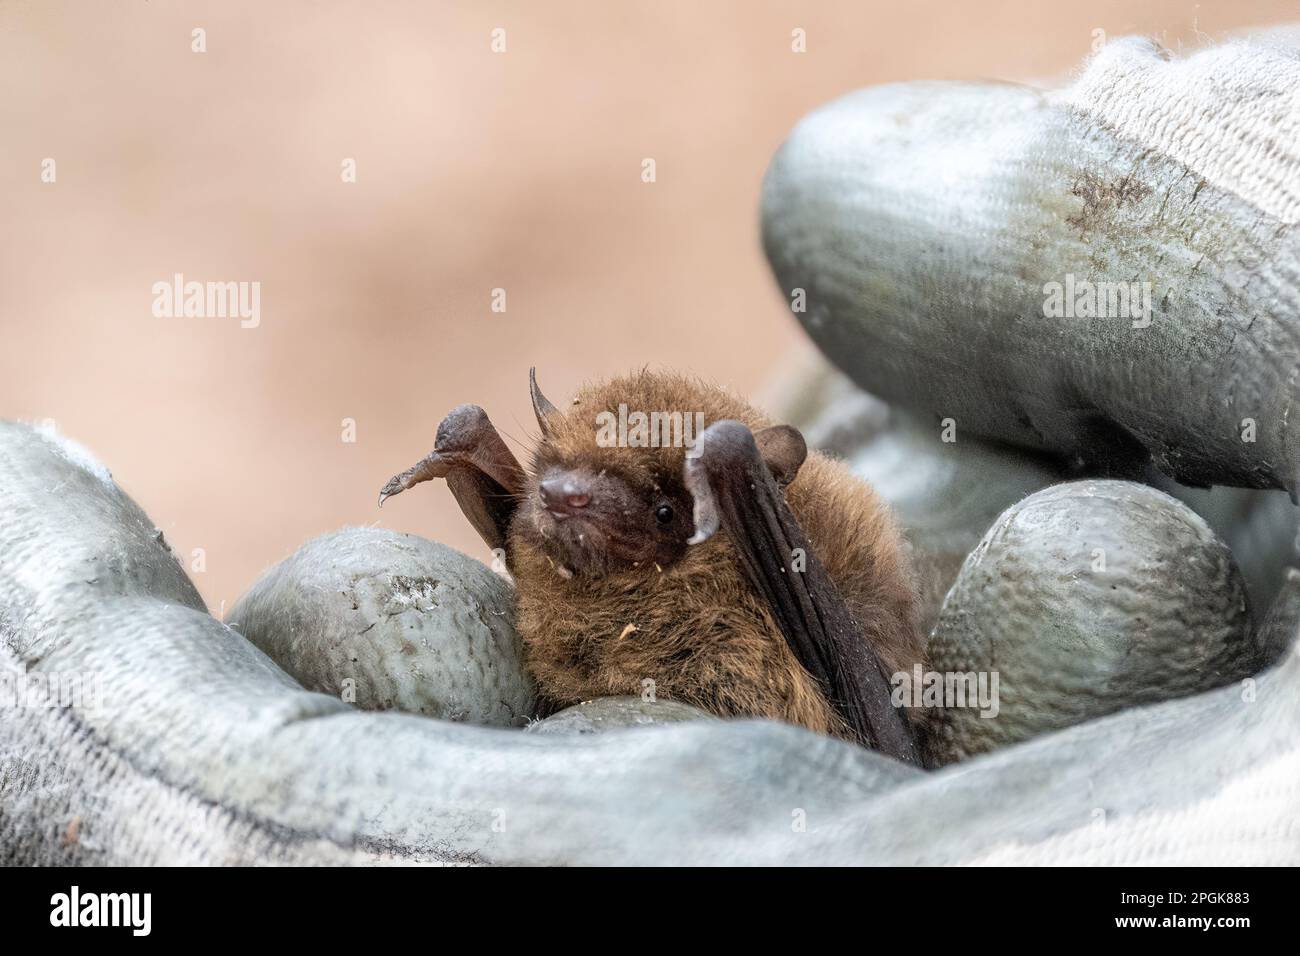 La chauve-souris de pipistrelle soprano (Pipistrellus pygmaeus) en main d'un arpenteur autorisé, Surrey, Angleterre, Royaume-Uni. Enquête sur les chauves-souris, enquêtes sur les chauves Banque D'Images